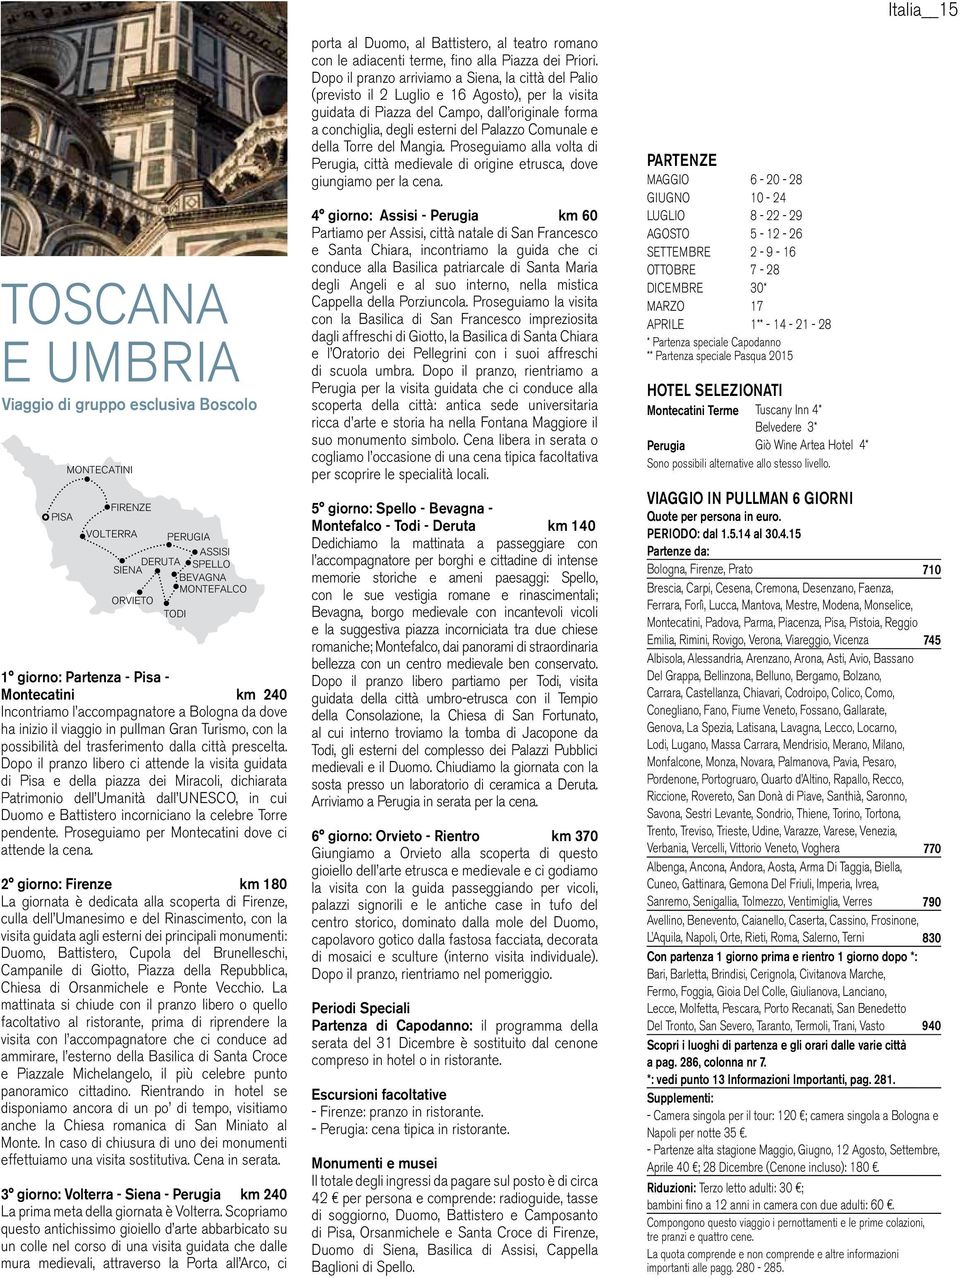 Dopo il pranzo libero ci attende la visita guidata di Pisa e della piazza dei Miracoli, dichiarata Patrimonio dell Umanità dall UNESCO, in cui Duomo e Battistero incorniciano la celebre Torre